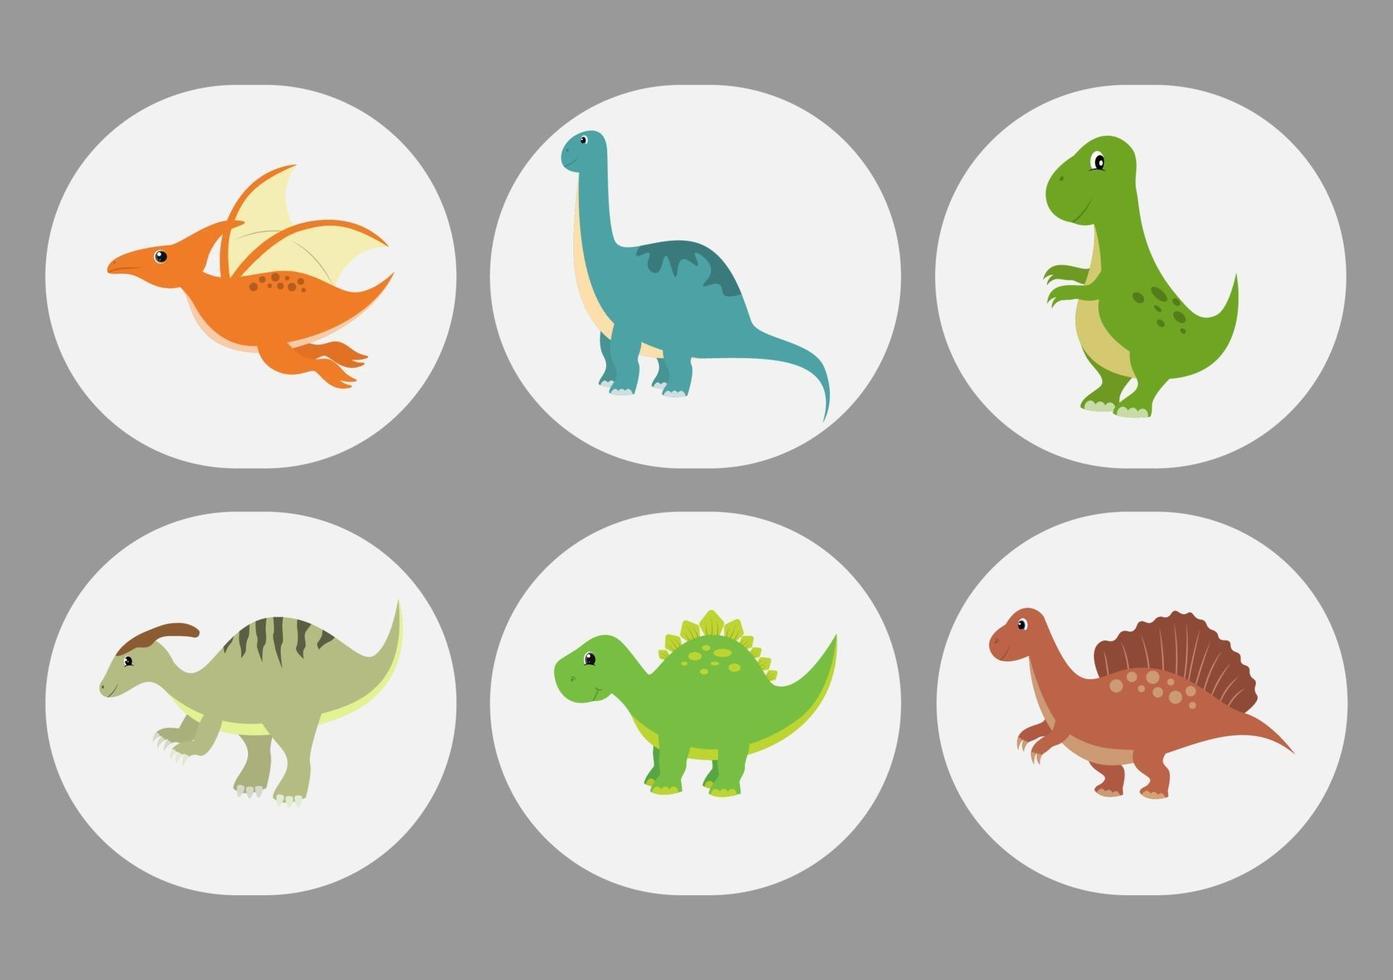 Ilustración de personajes de dibujos animados de dinosaurios lindos como spinosaurus, parasaurolophus, estegosaurio, tiranosaurio, pterodáctilo y diplodocus vector